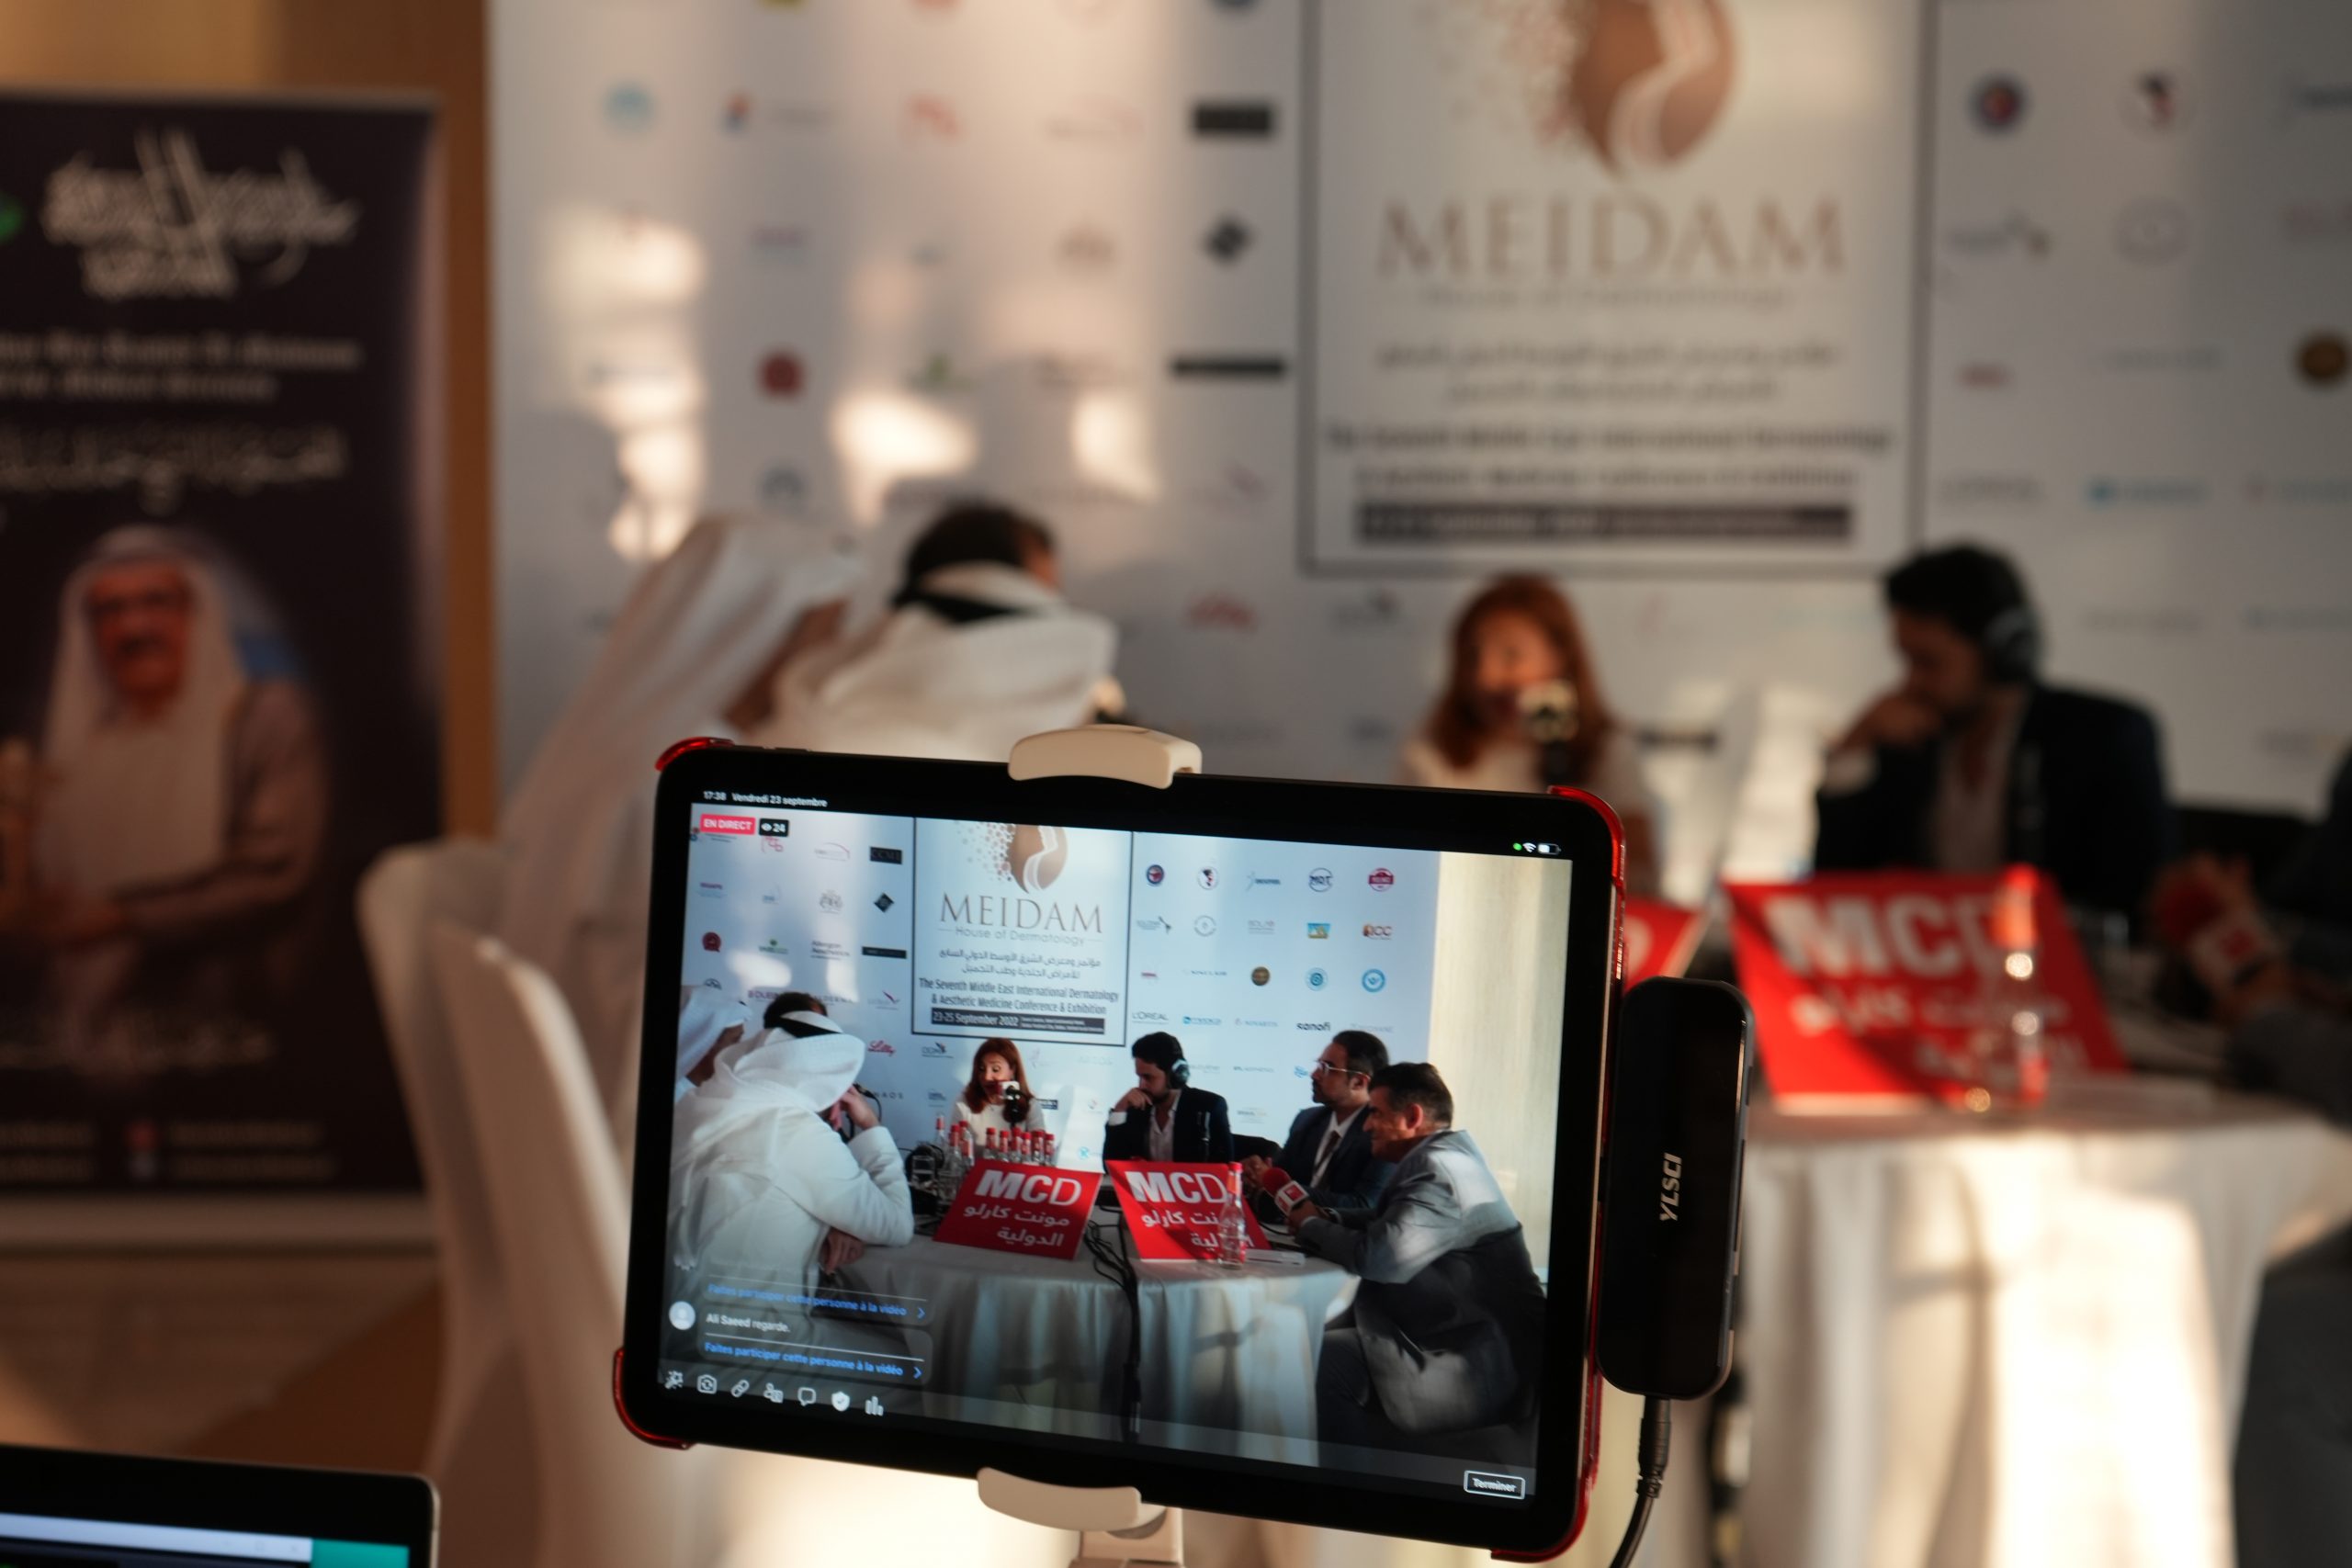 دبي تستضيف الدورة الثامنة لمؤتمر ومعرض الشرق الأوسط الدولي للأمراض الجلدية وطب التجميل – ميدام 2023 في الفترة من 22 – 24 سبتمبر